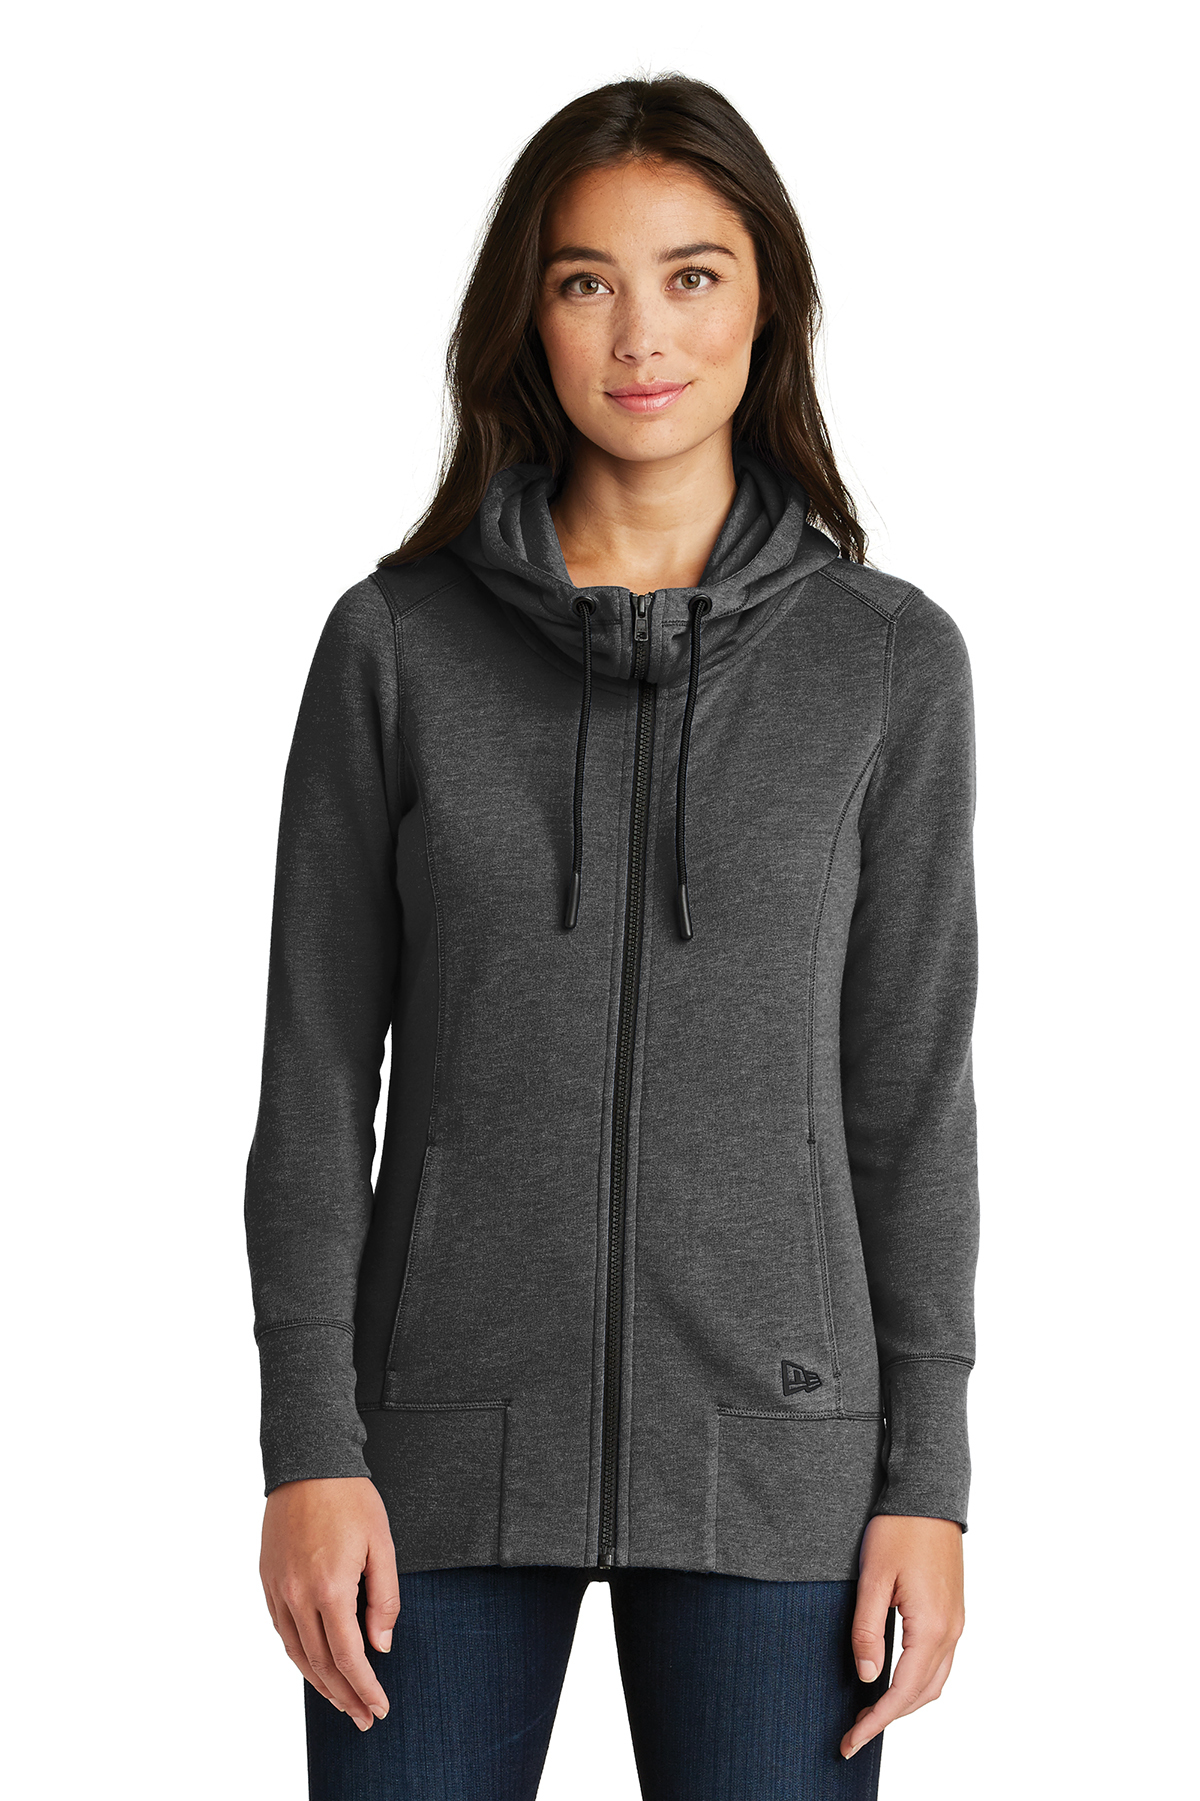 New Era ® Ladies Tri-Blend Fleece Full-Zip Hoodie | Product | SanMar